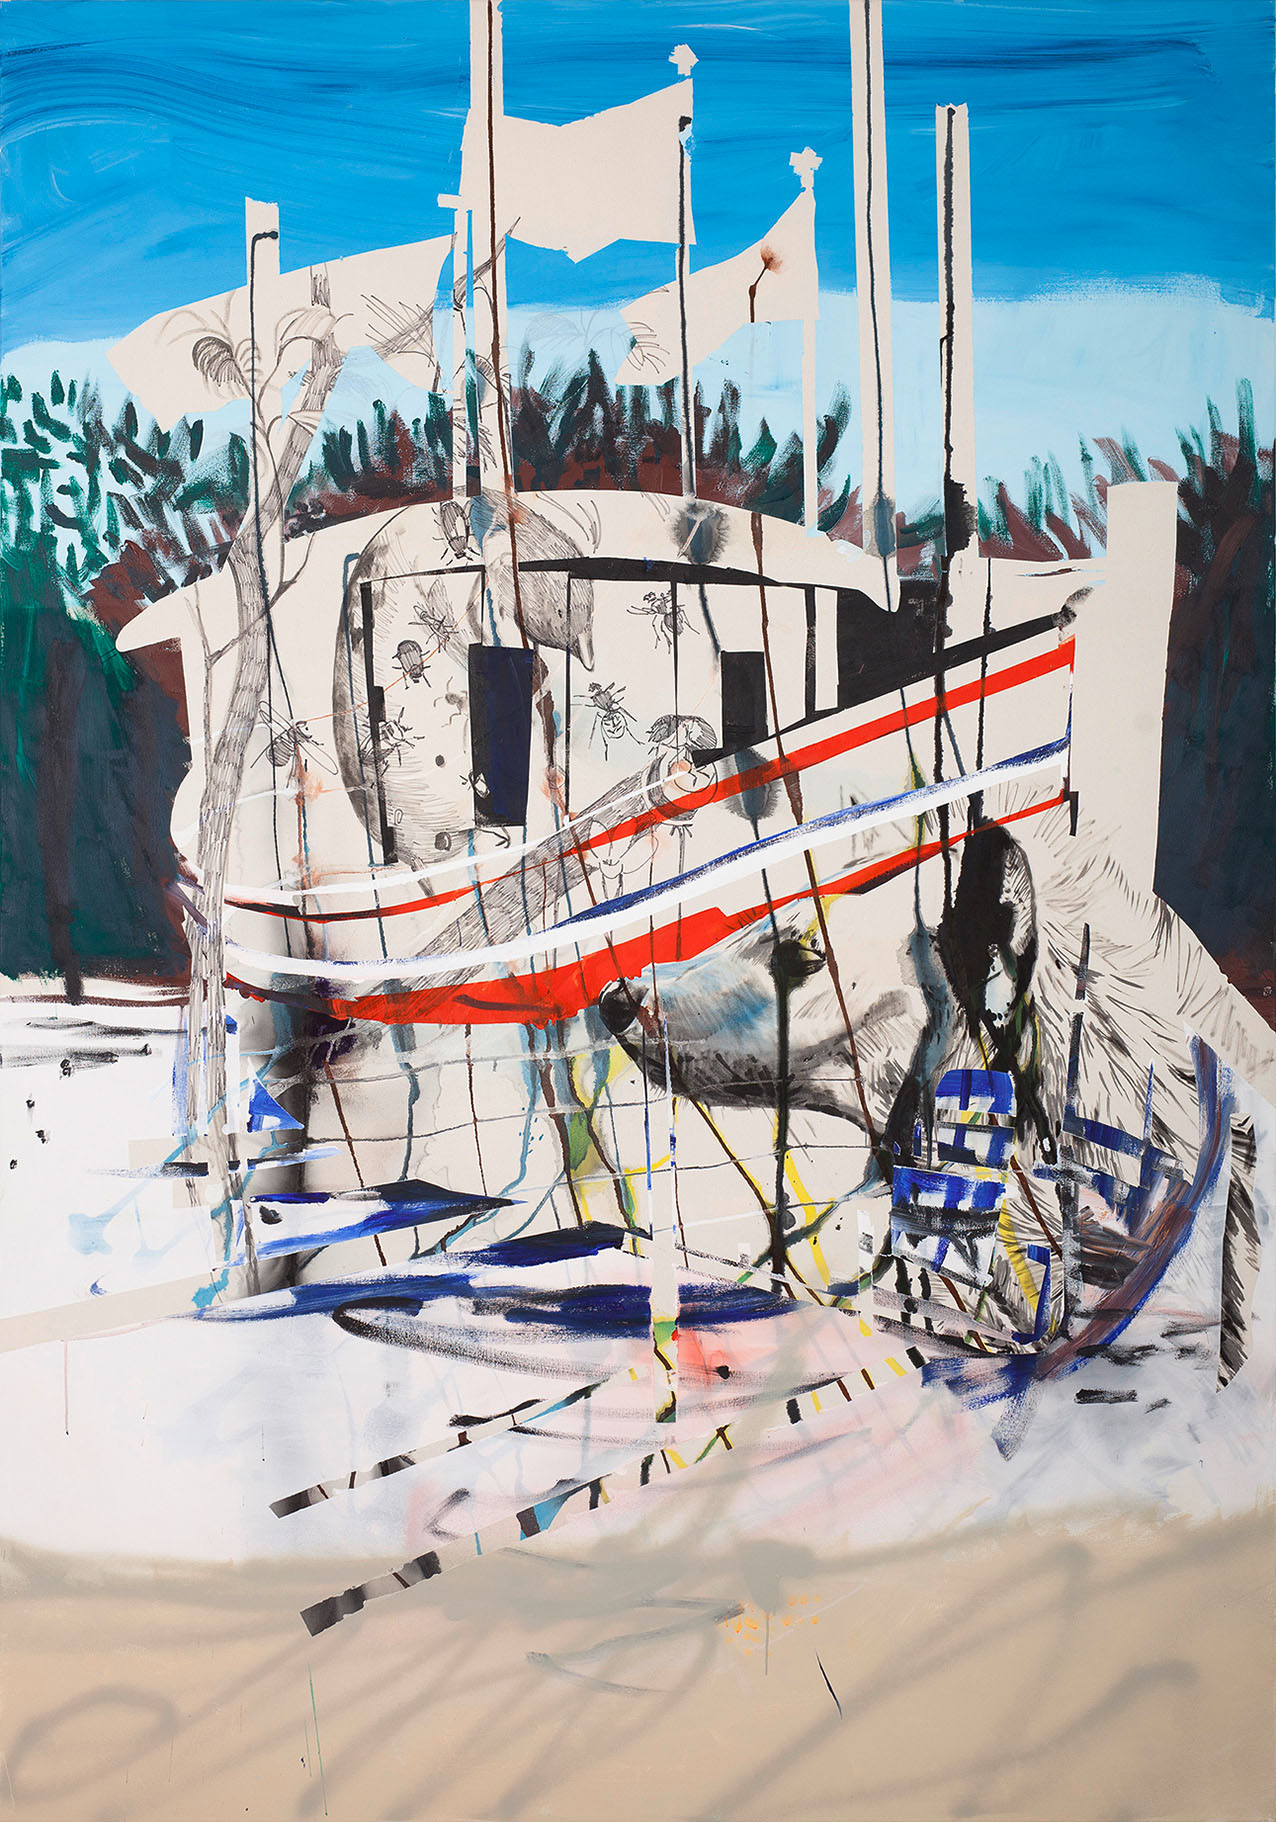 o.T. aus „Alm Alb Pacific”, 2015, 270 x 190 cm, Mischtechnik auf Leinwand